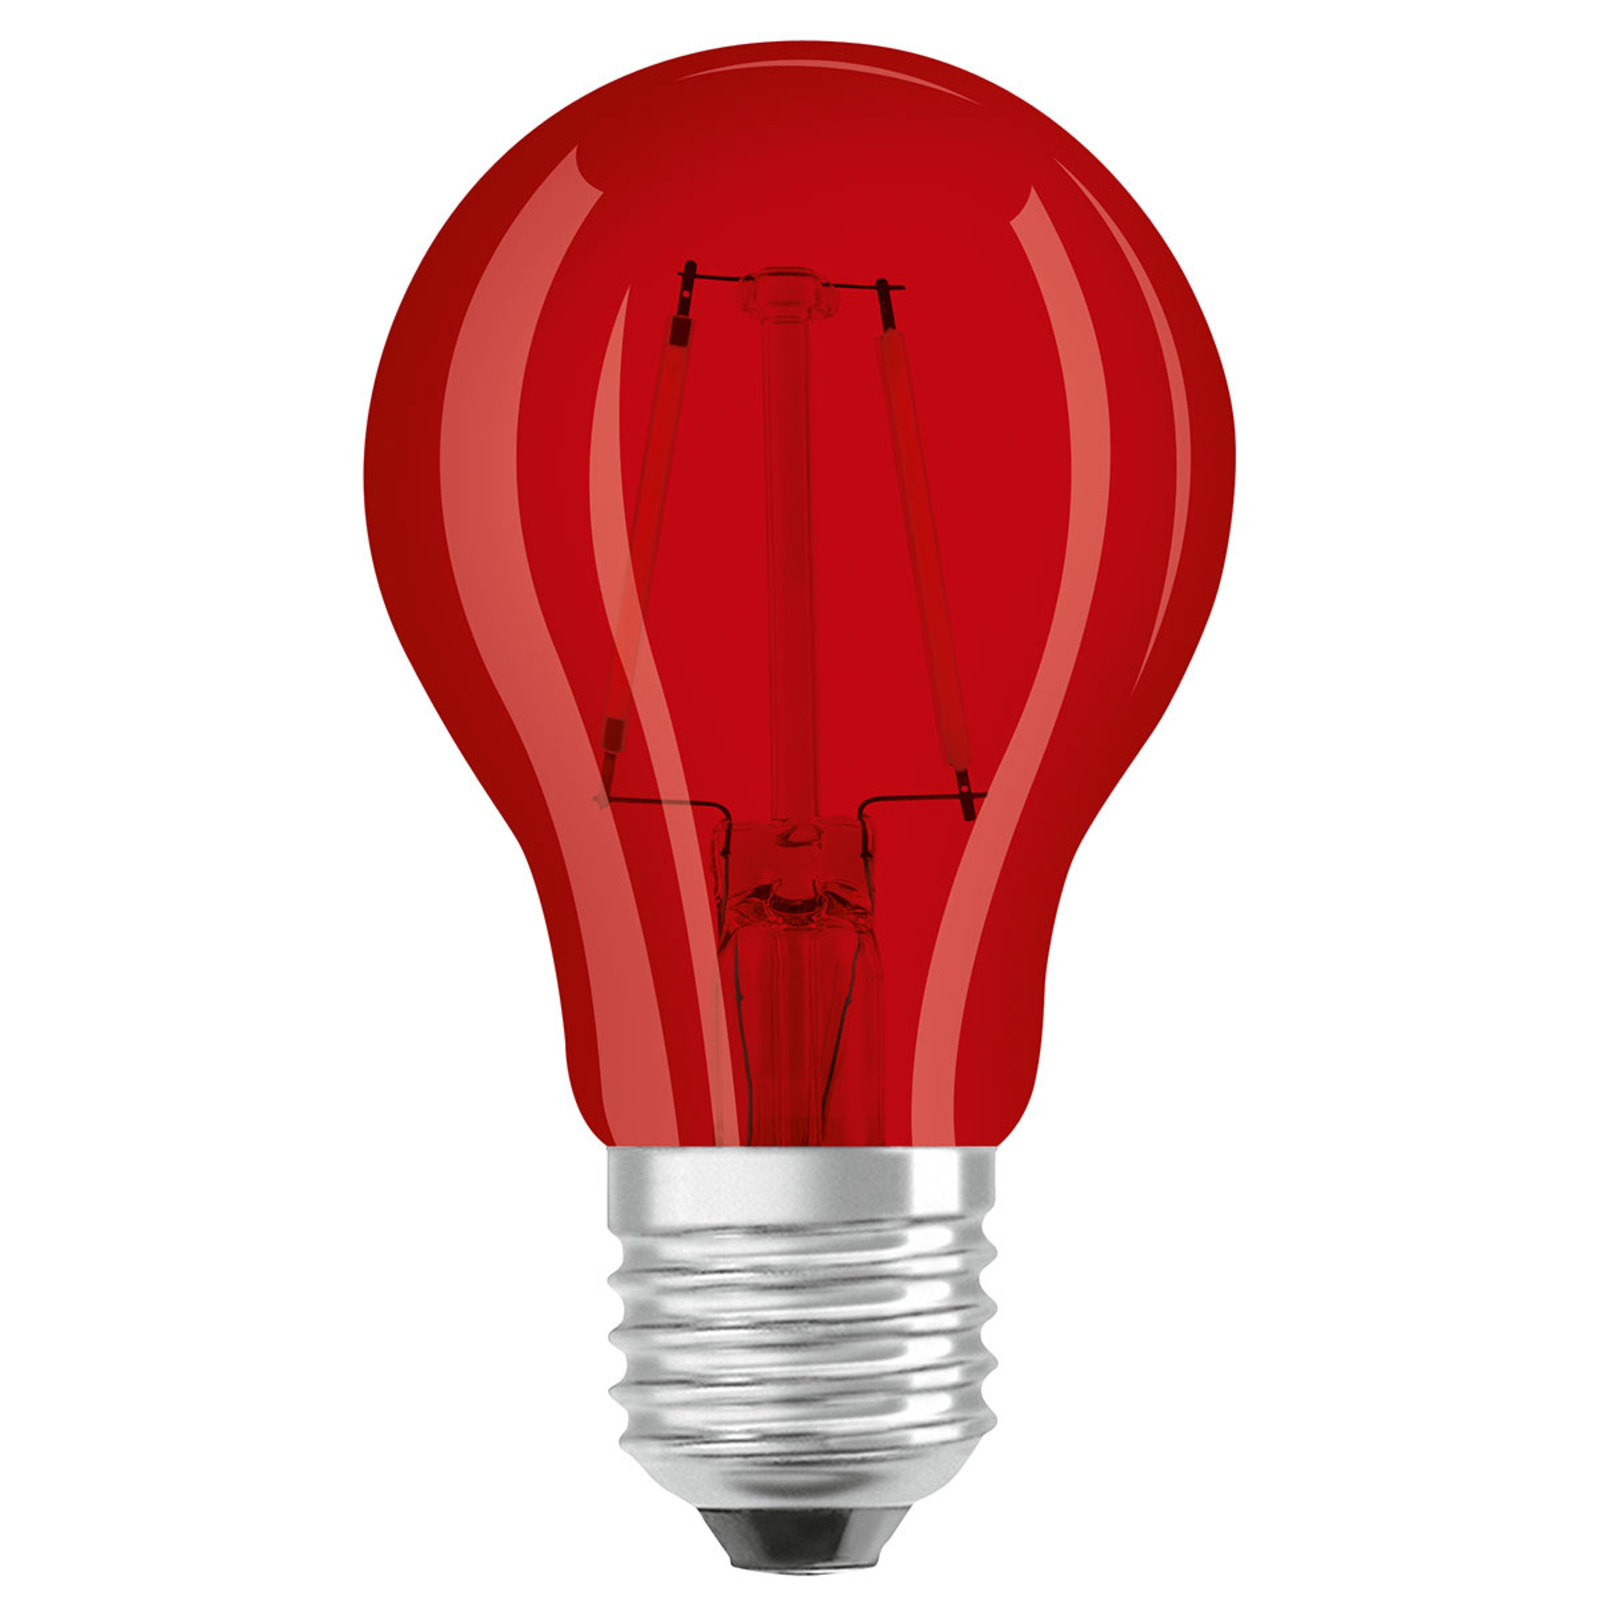 eindpunt Afwezigheid Jeugd OSRAM LED lamp E27 Star Décor Cla A 2,5W, rood | Lampen24.nl